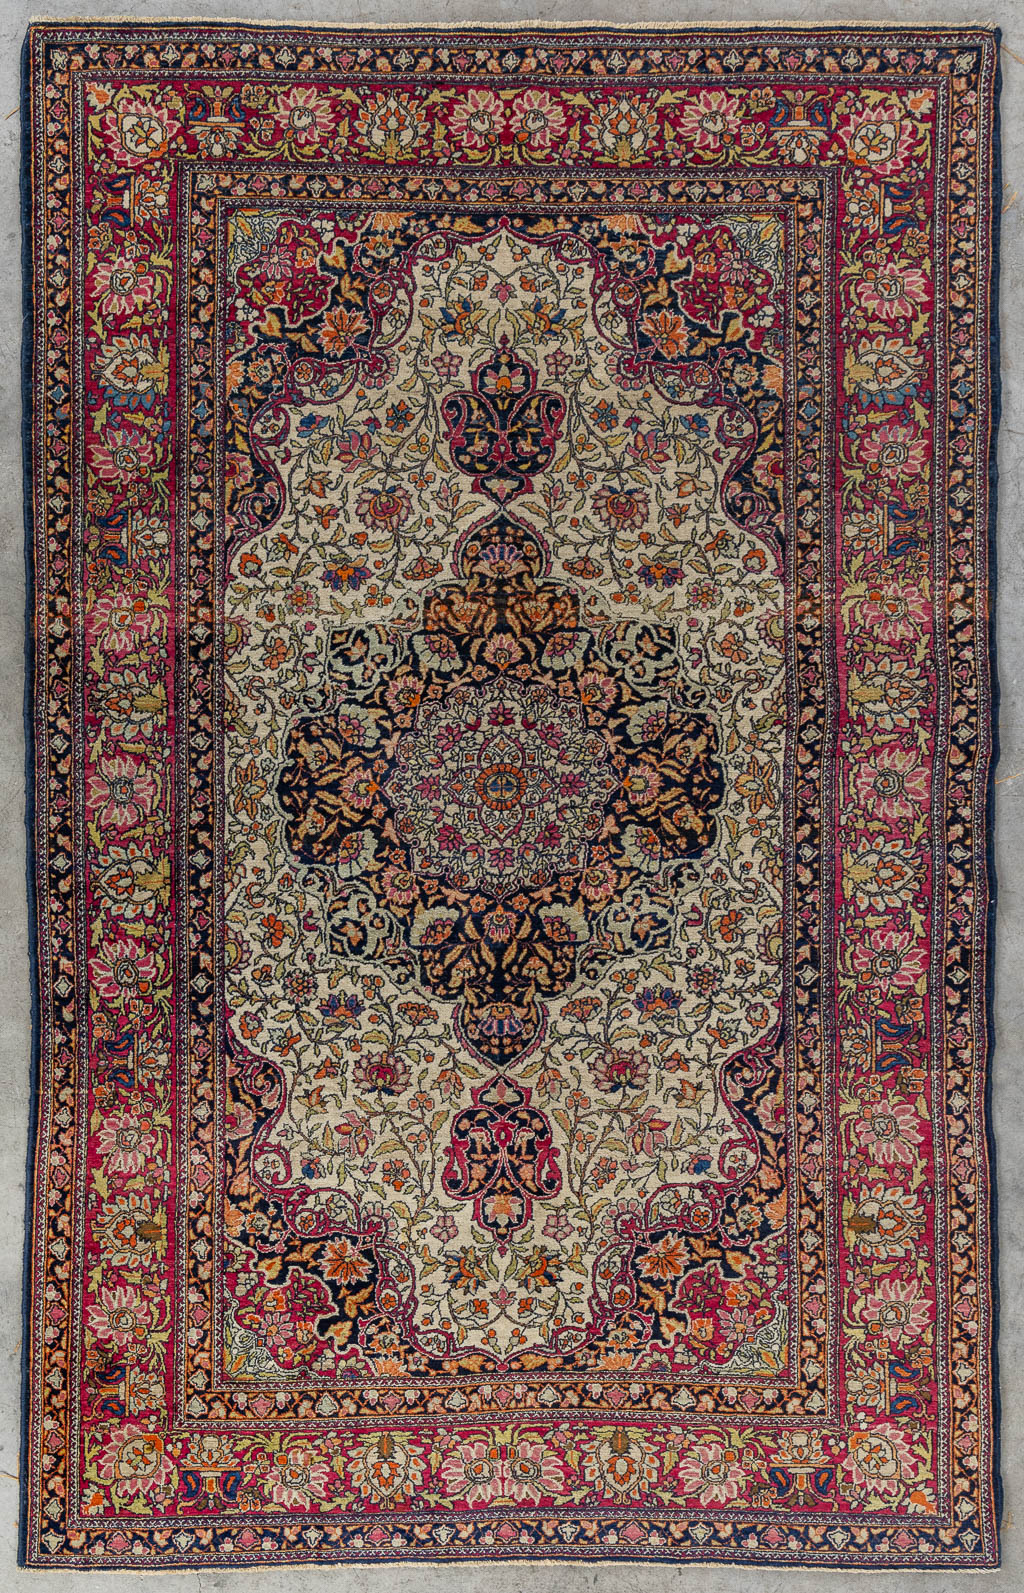 Lot 217 Een Oosters handgeknoopt tapijt, Isfahan. (L:225 x W:145 cm)